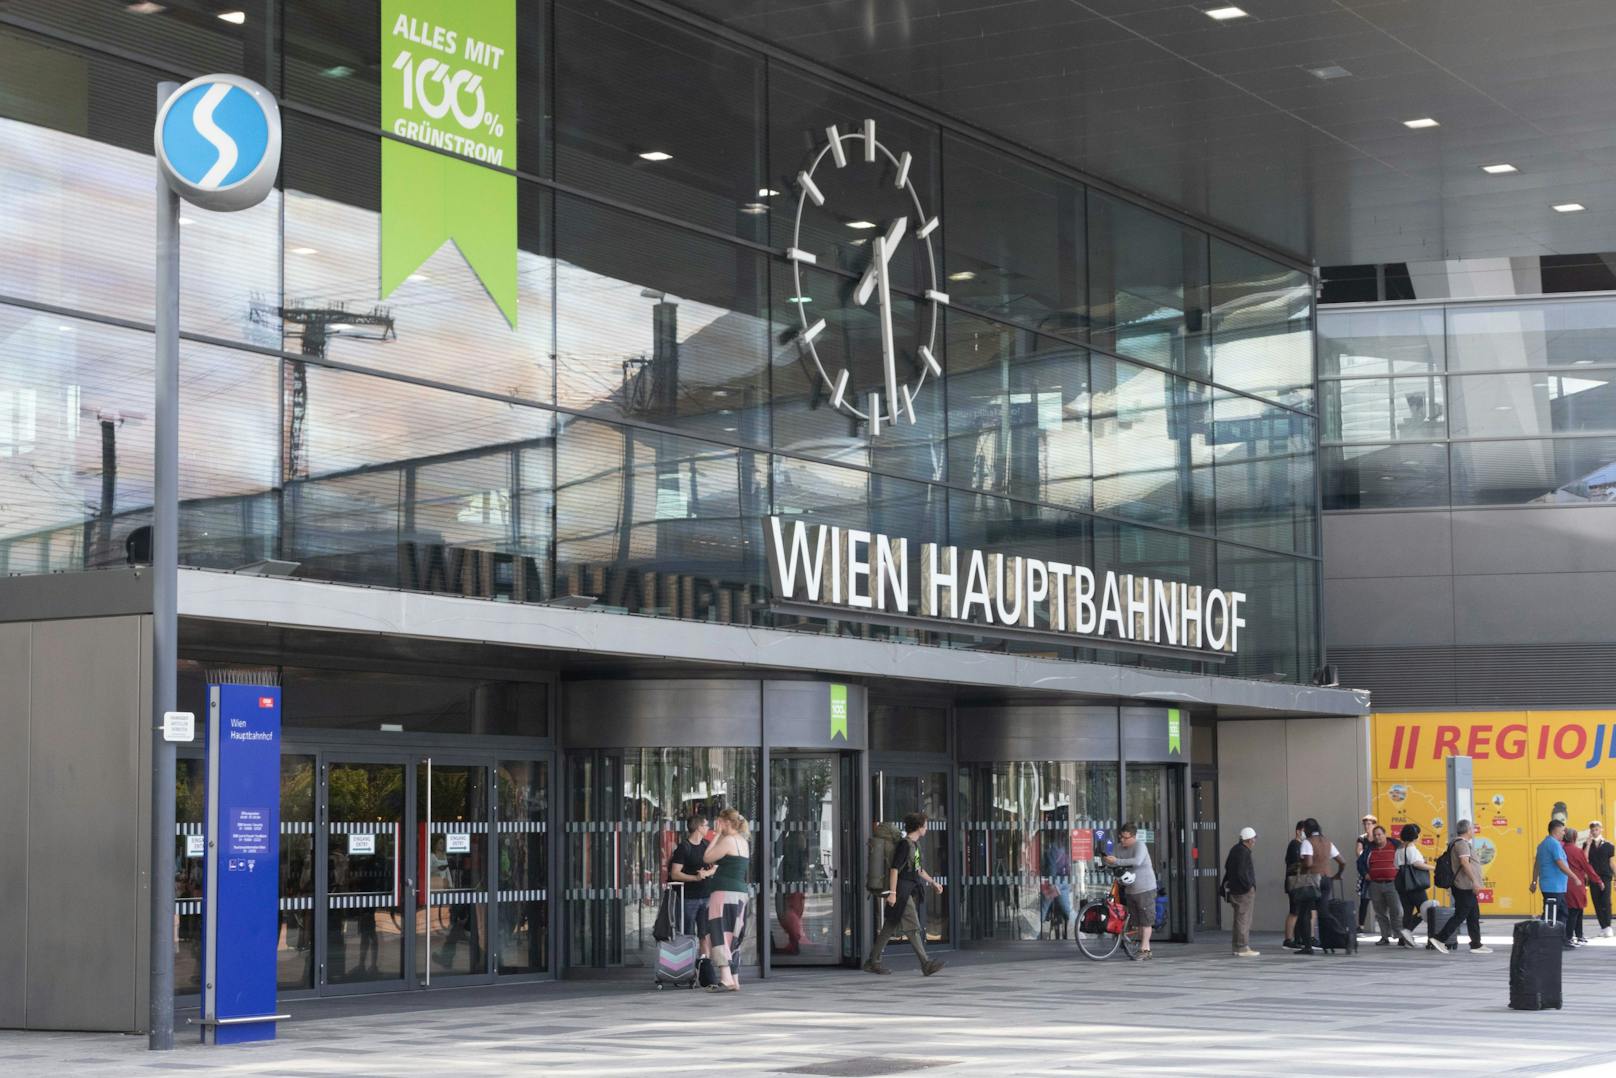 Der Vorfall ereignete sich am 11. November, gegen 17.30 Uhr, auf dem Wiener Hauptbahnhof. <a target="_blank" data-li-document-ref="100238189" href="https://www.heute.at/g/-100238189">Mehr dazu hier &gt;&gt;</a>